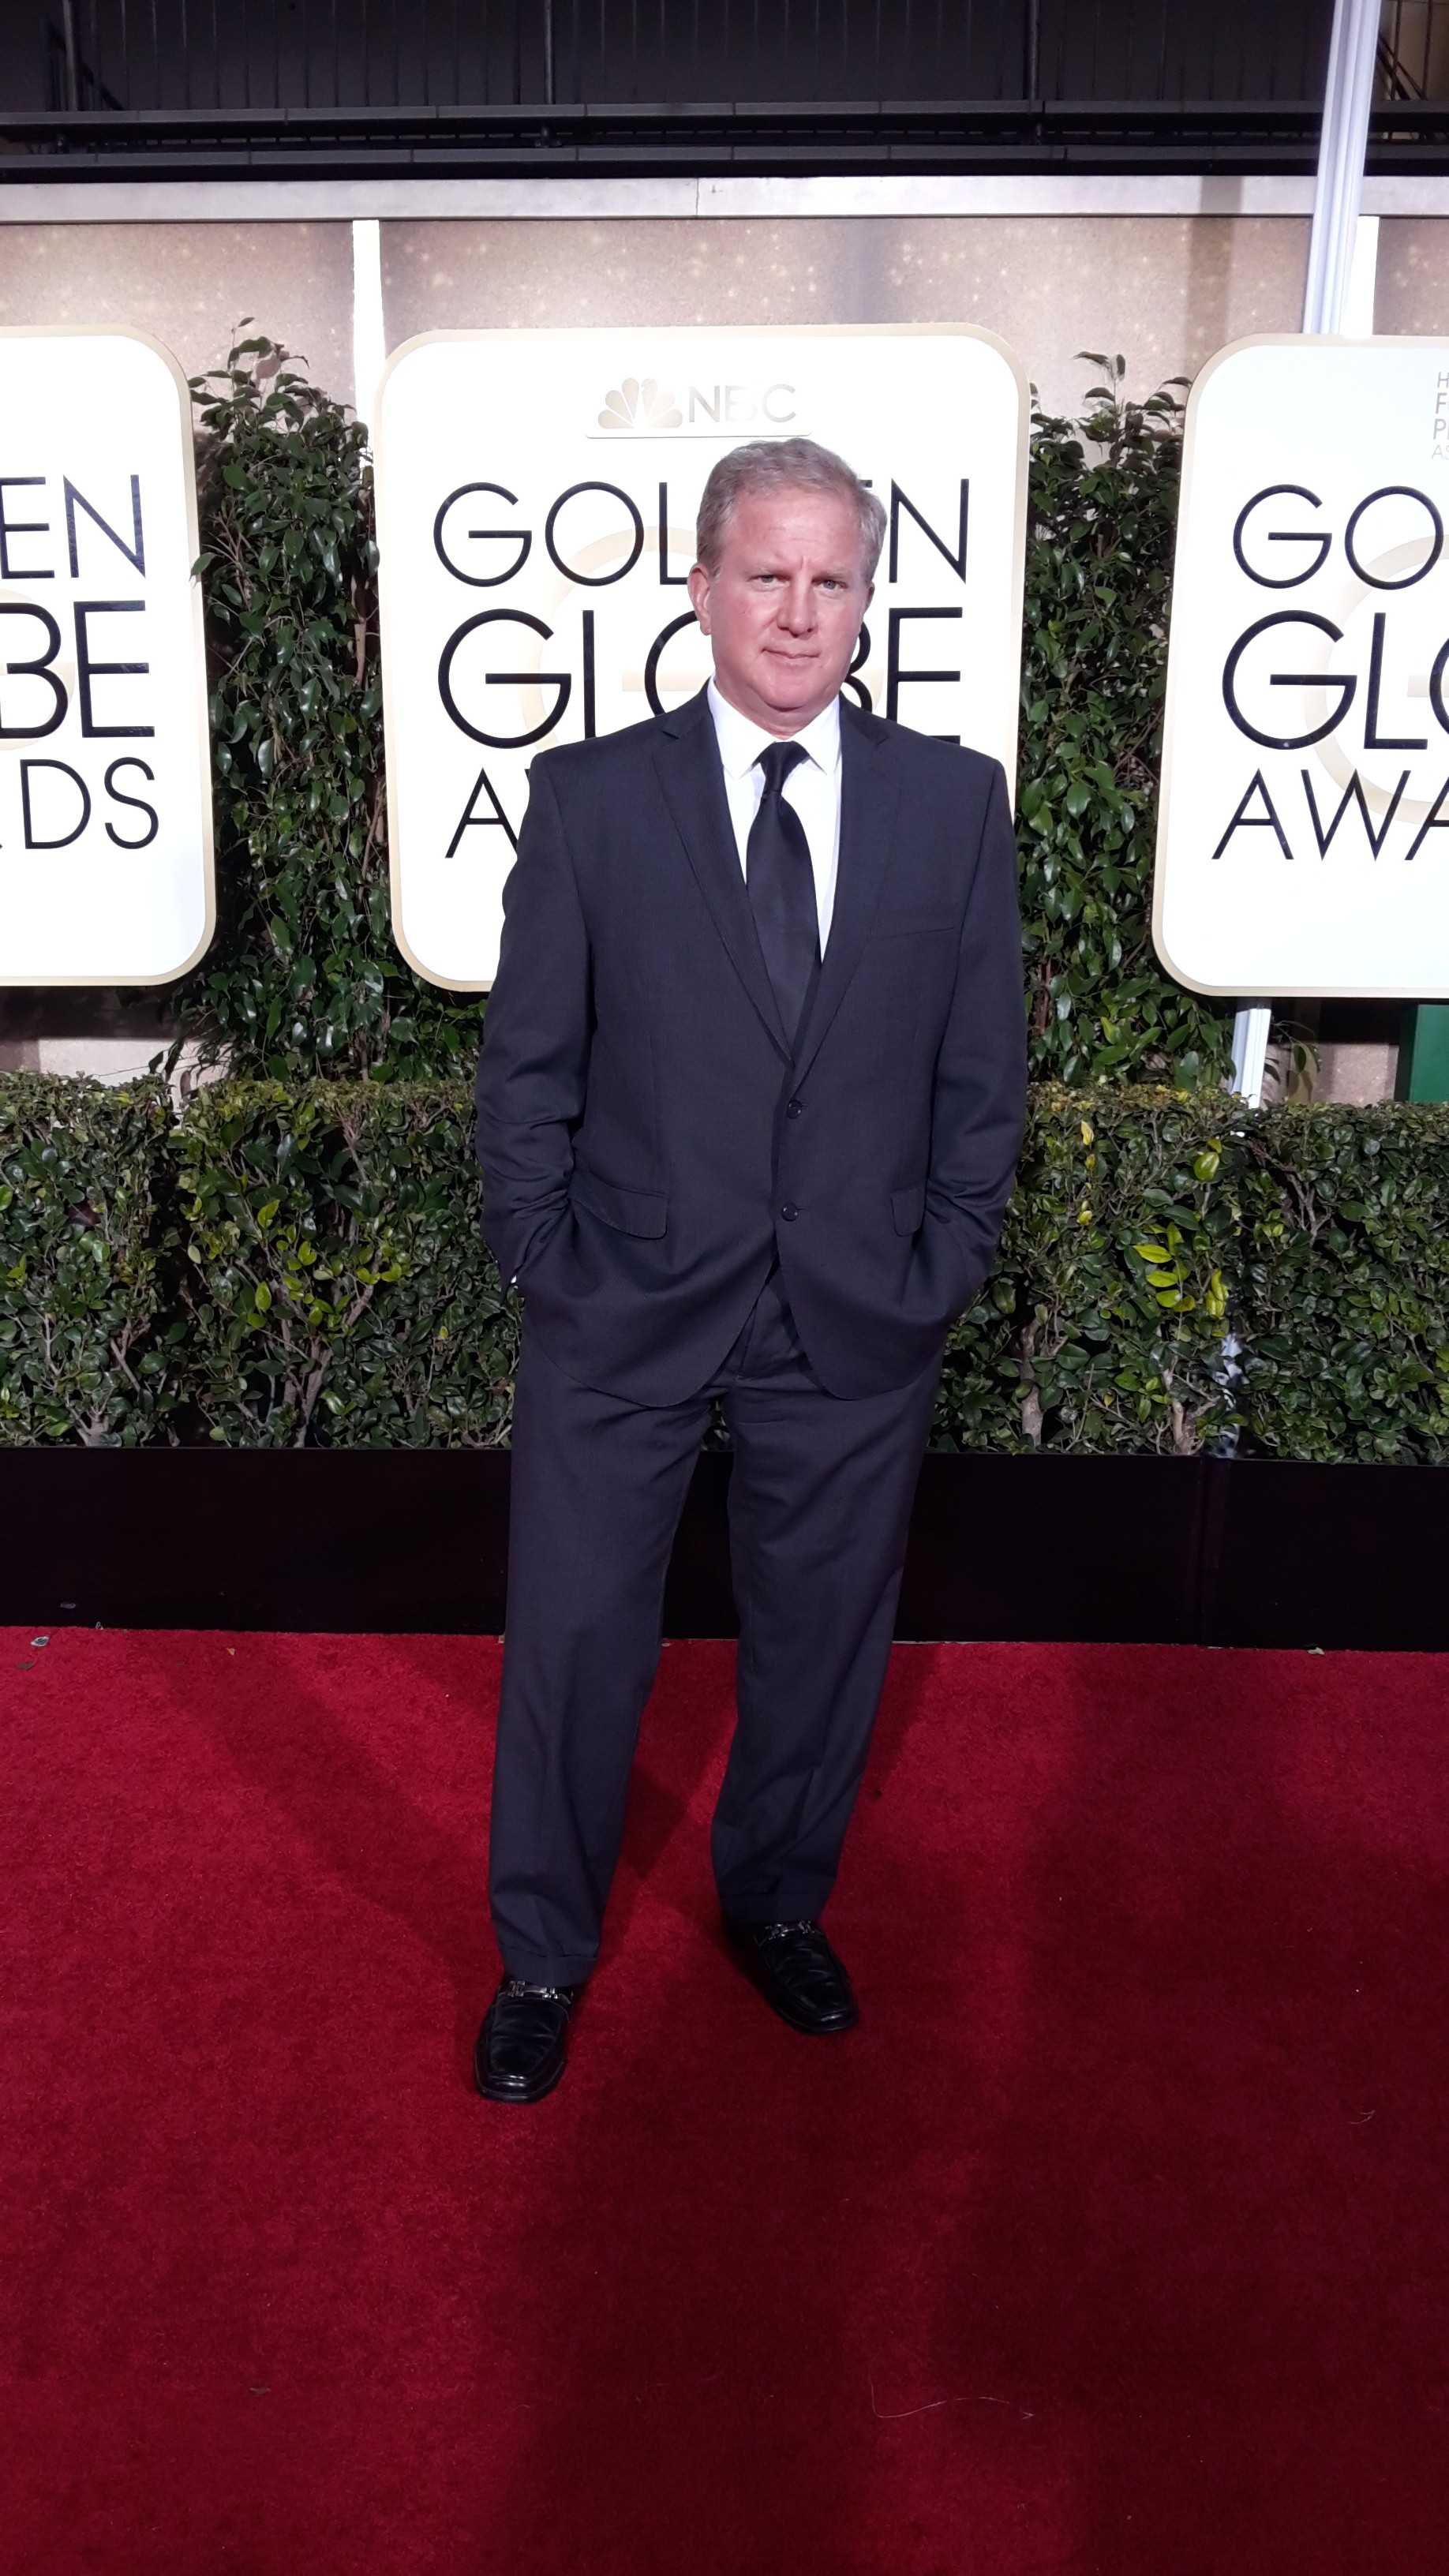 Brian Barasch. 2015 Golden Globe Awards.